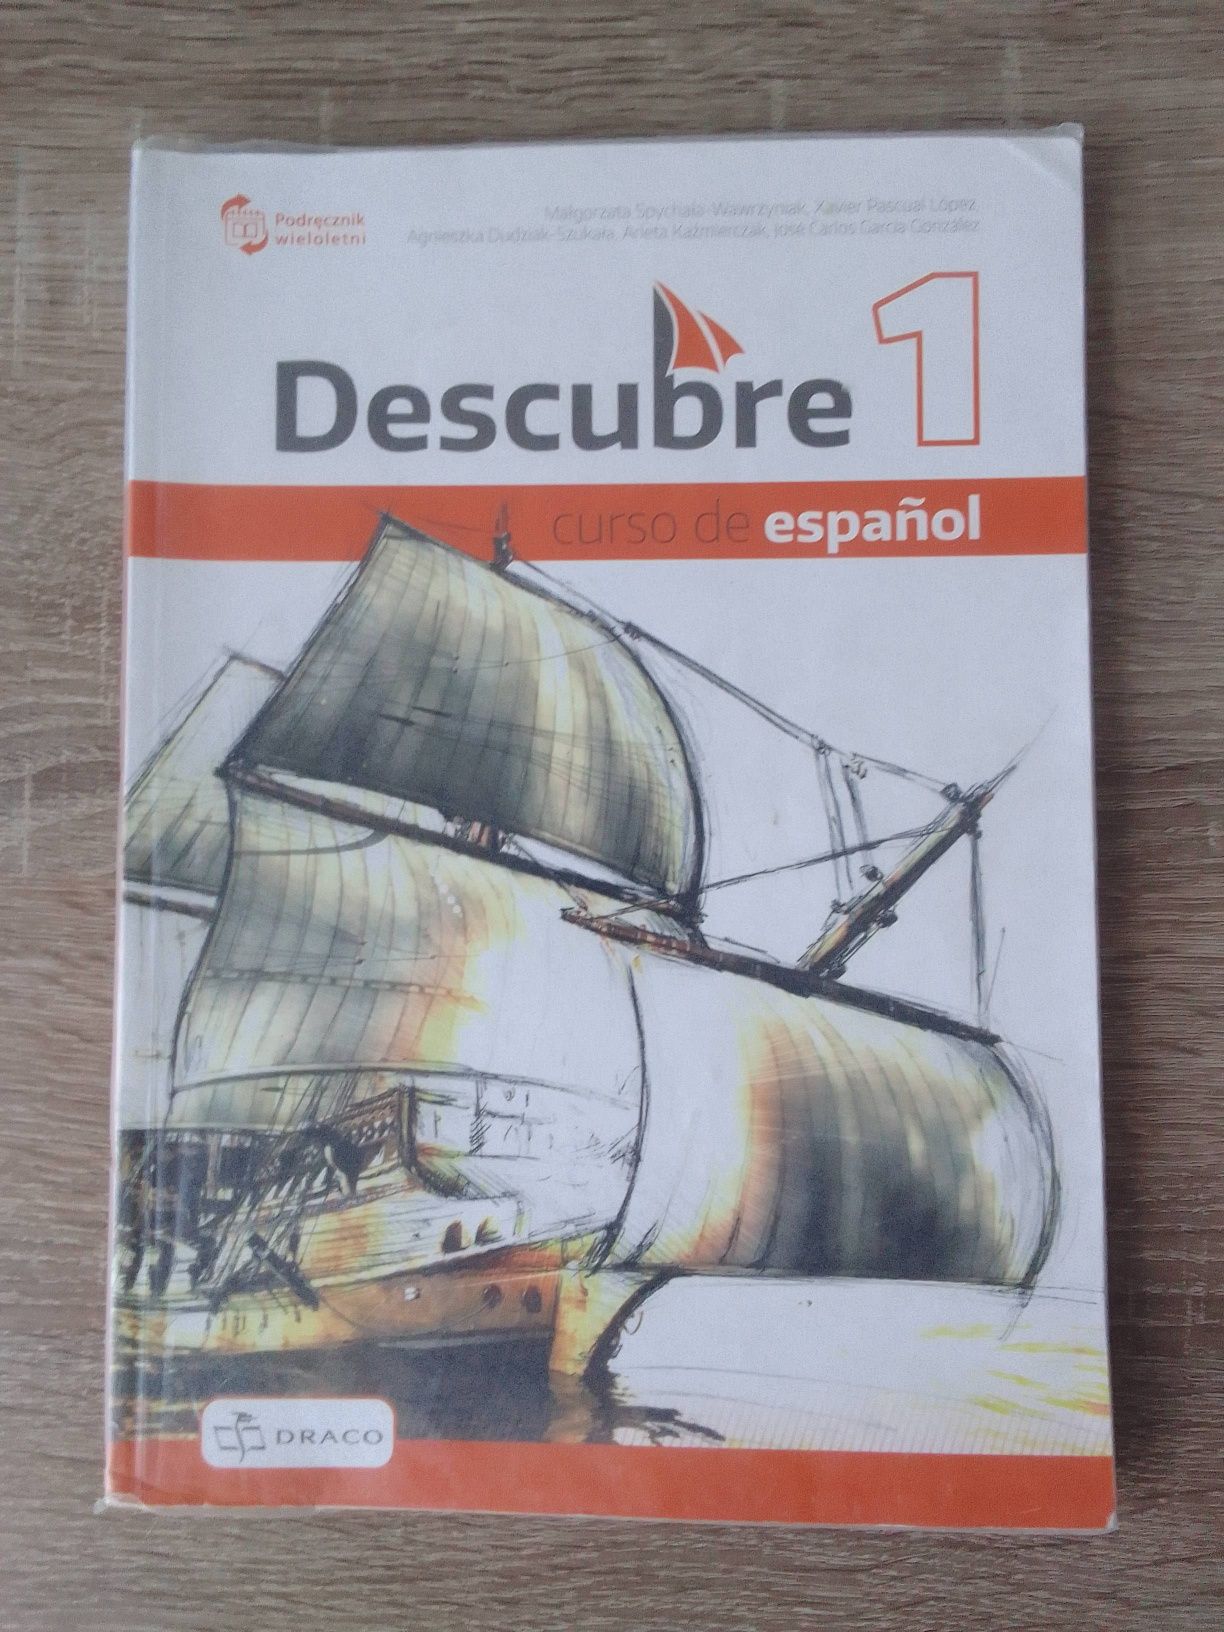 Podręcznik do języka hiszpańskiego | Descubre